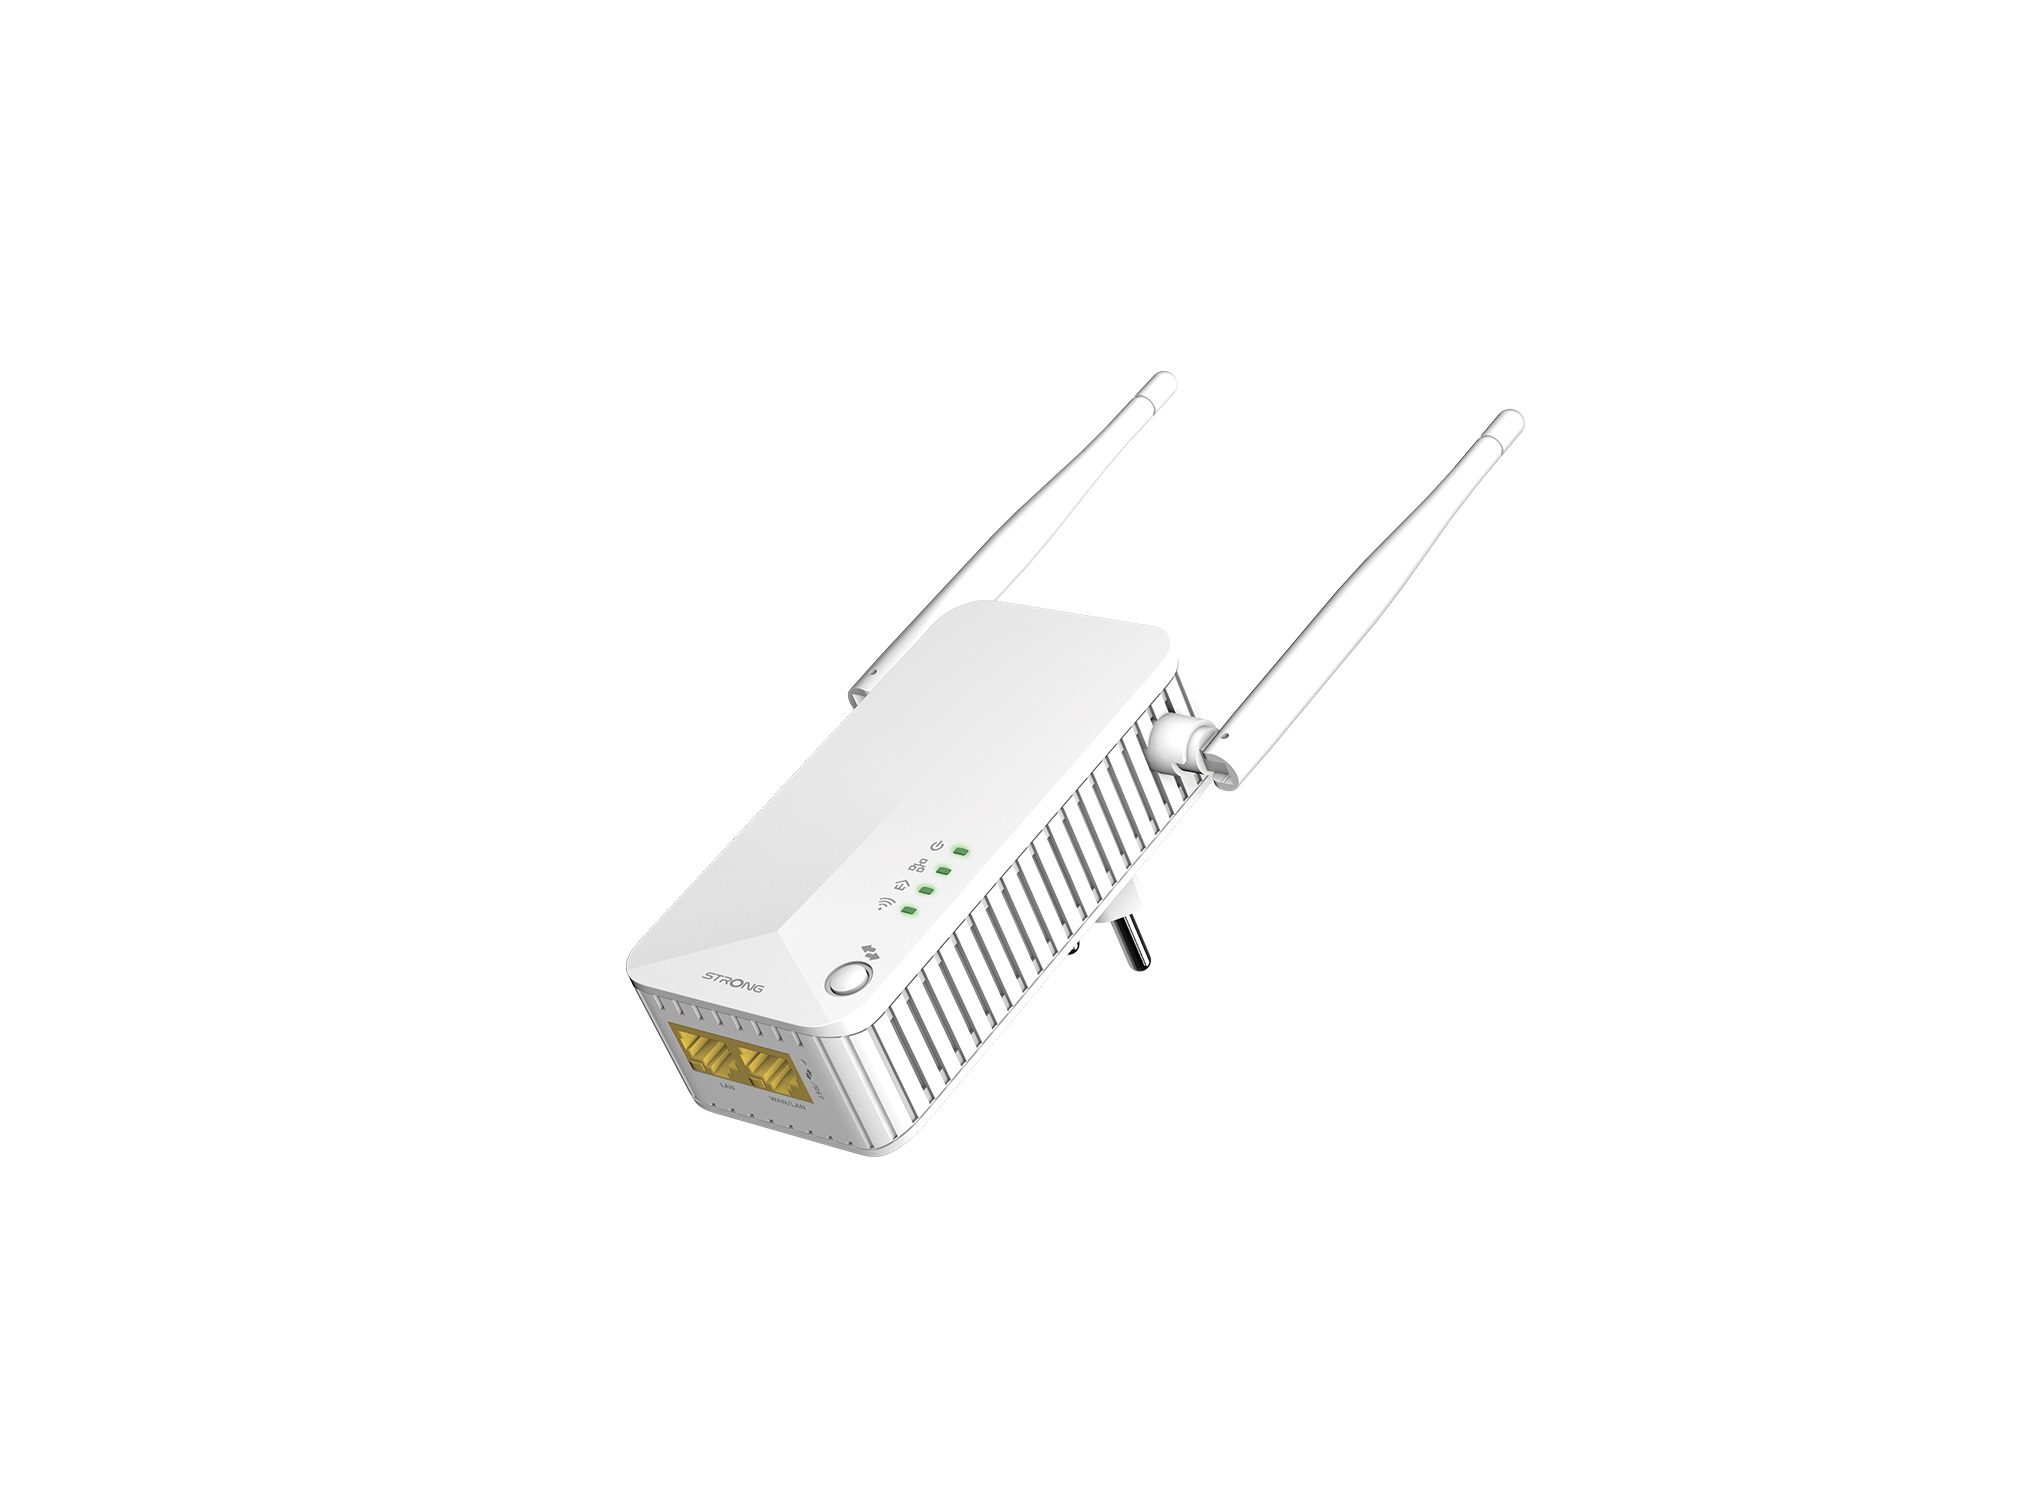 Set kabelgebunden, WLAN EU LAN STRONG Powerline kabellos Mbit/s 600 600 Powerline Duo